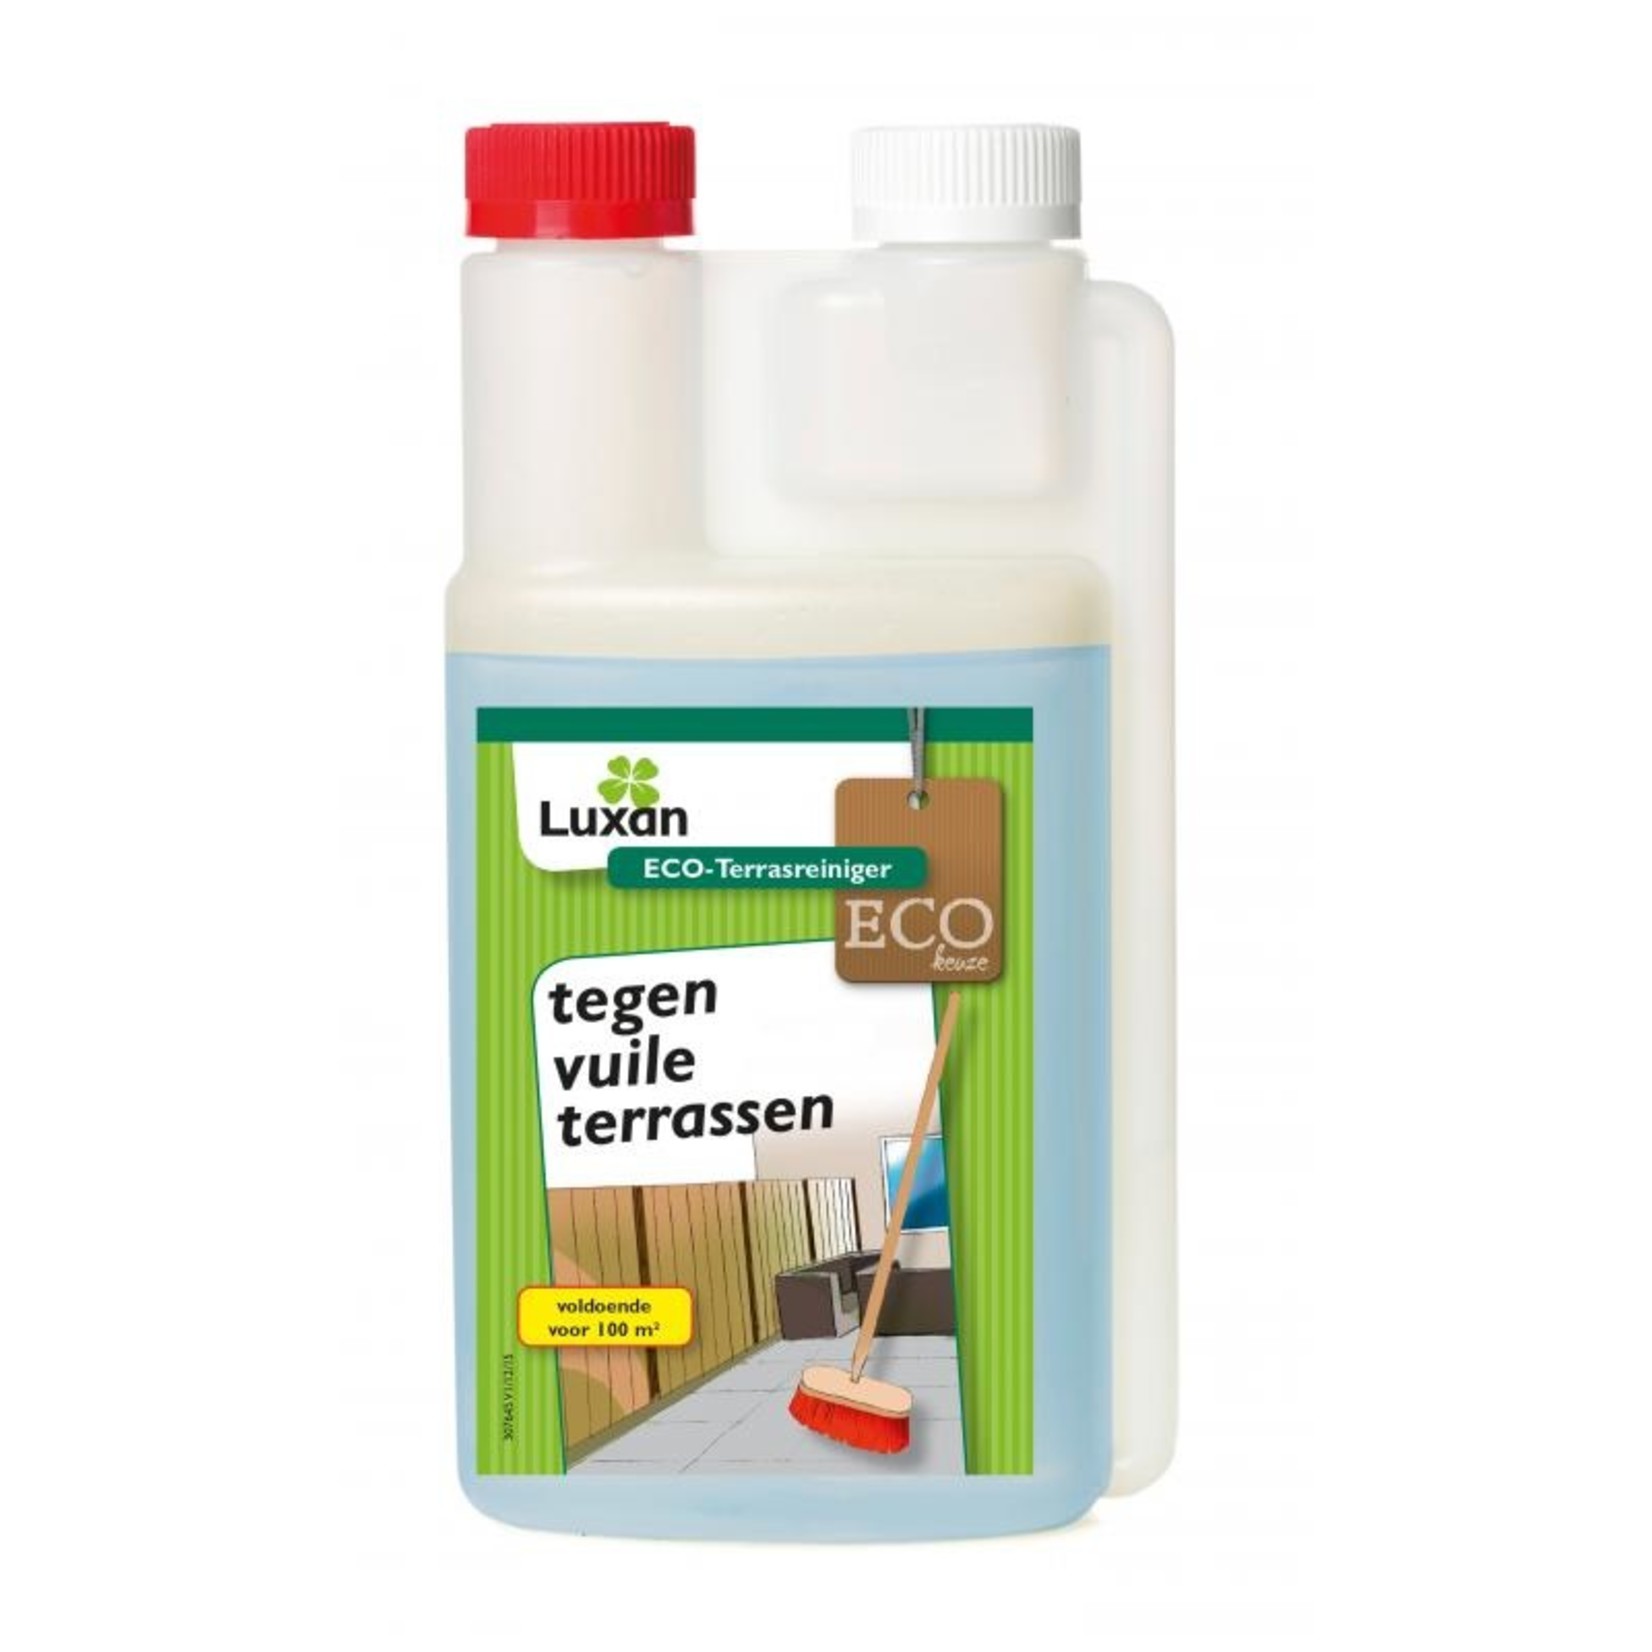 Luxan ECO-Terrasreiniger 500 ml (concentraat)